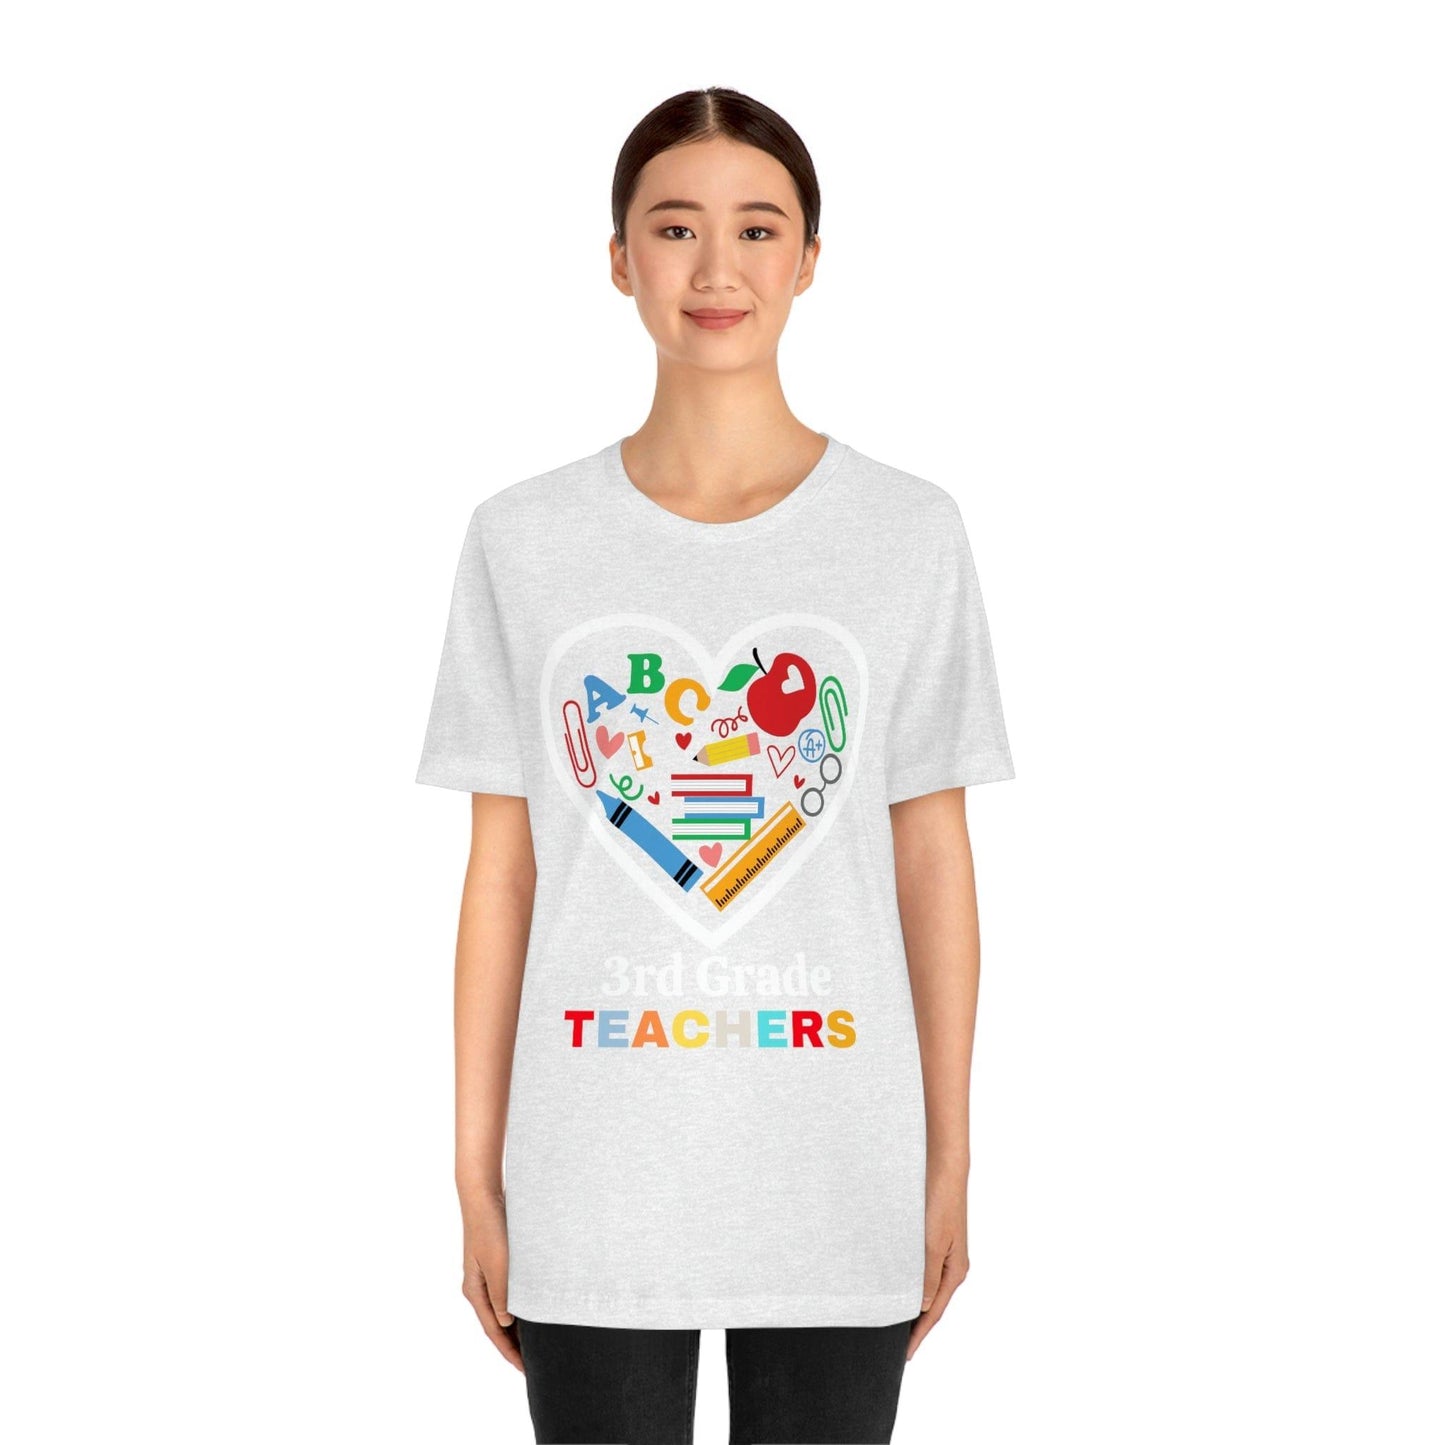 Love 3rd Grade Teacher Shirt - Teacher Appreciation Shirt - Gift for Teachers - 3rd Grade shirt